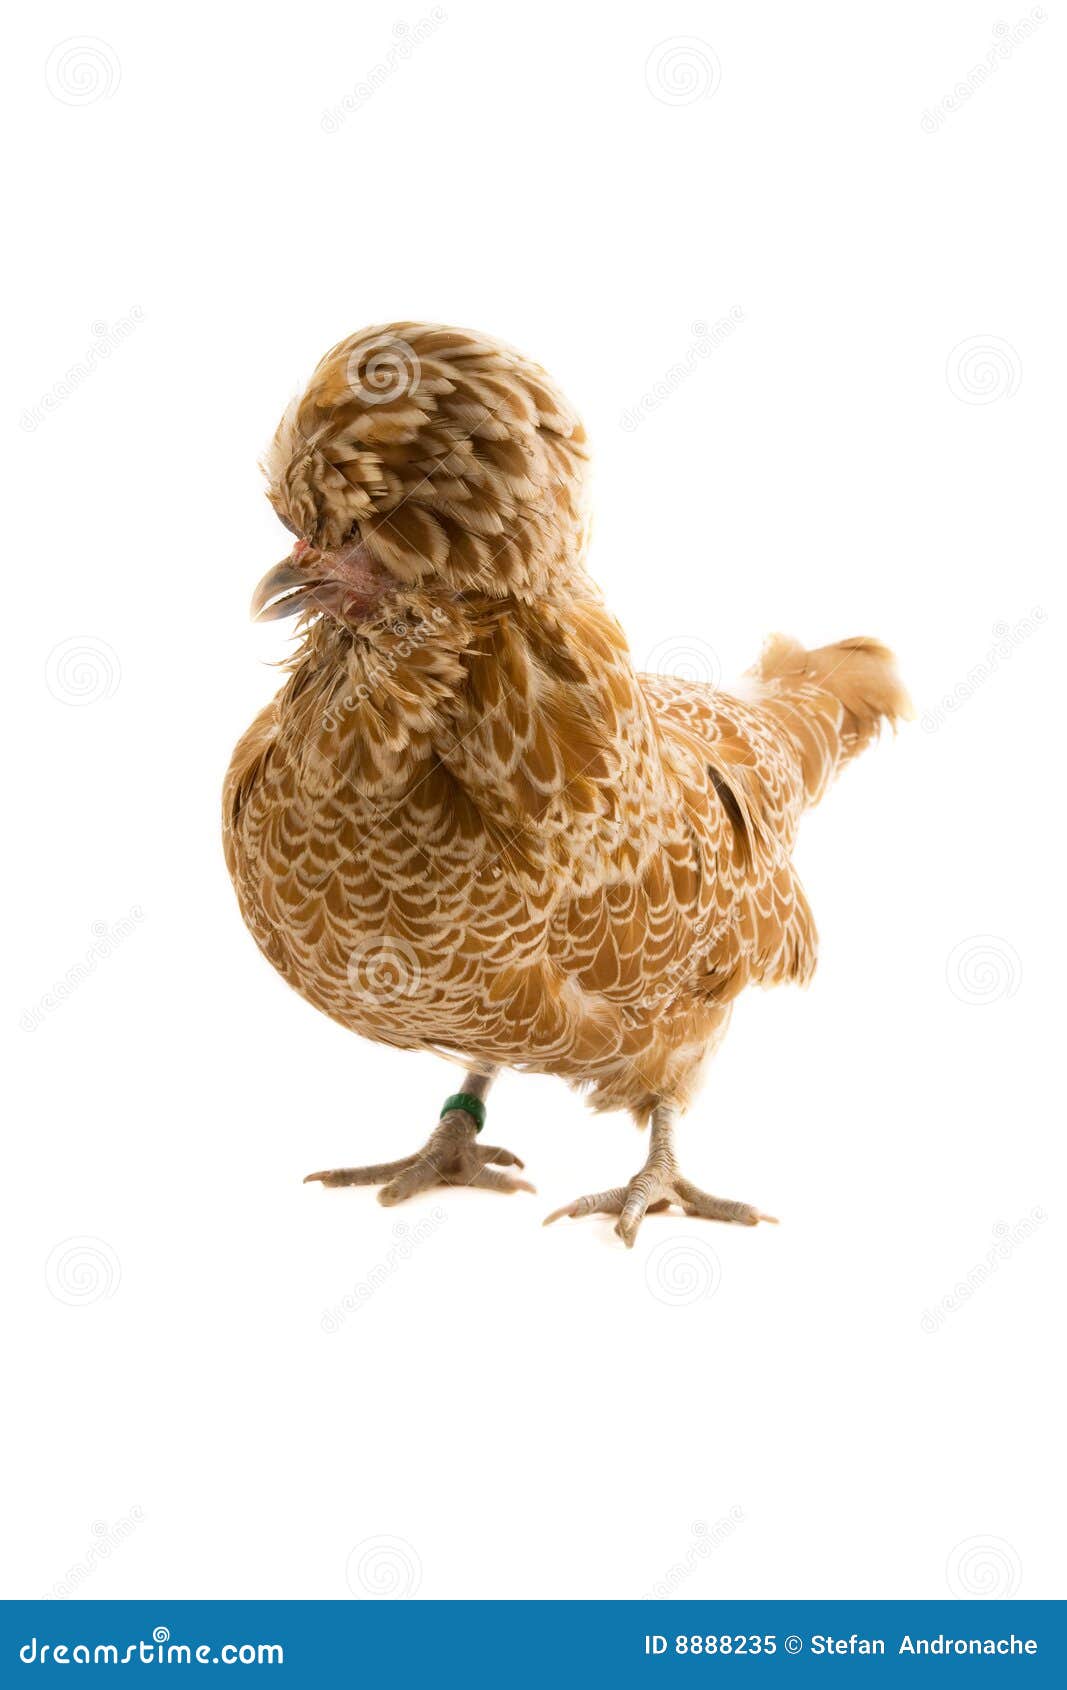 buff polish crested hen